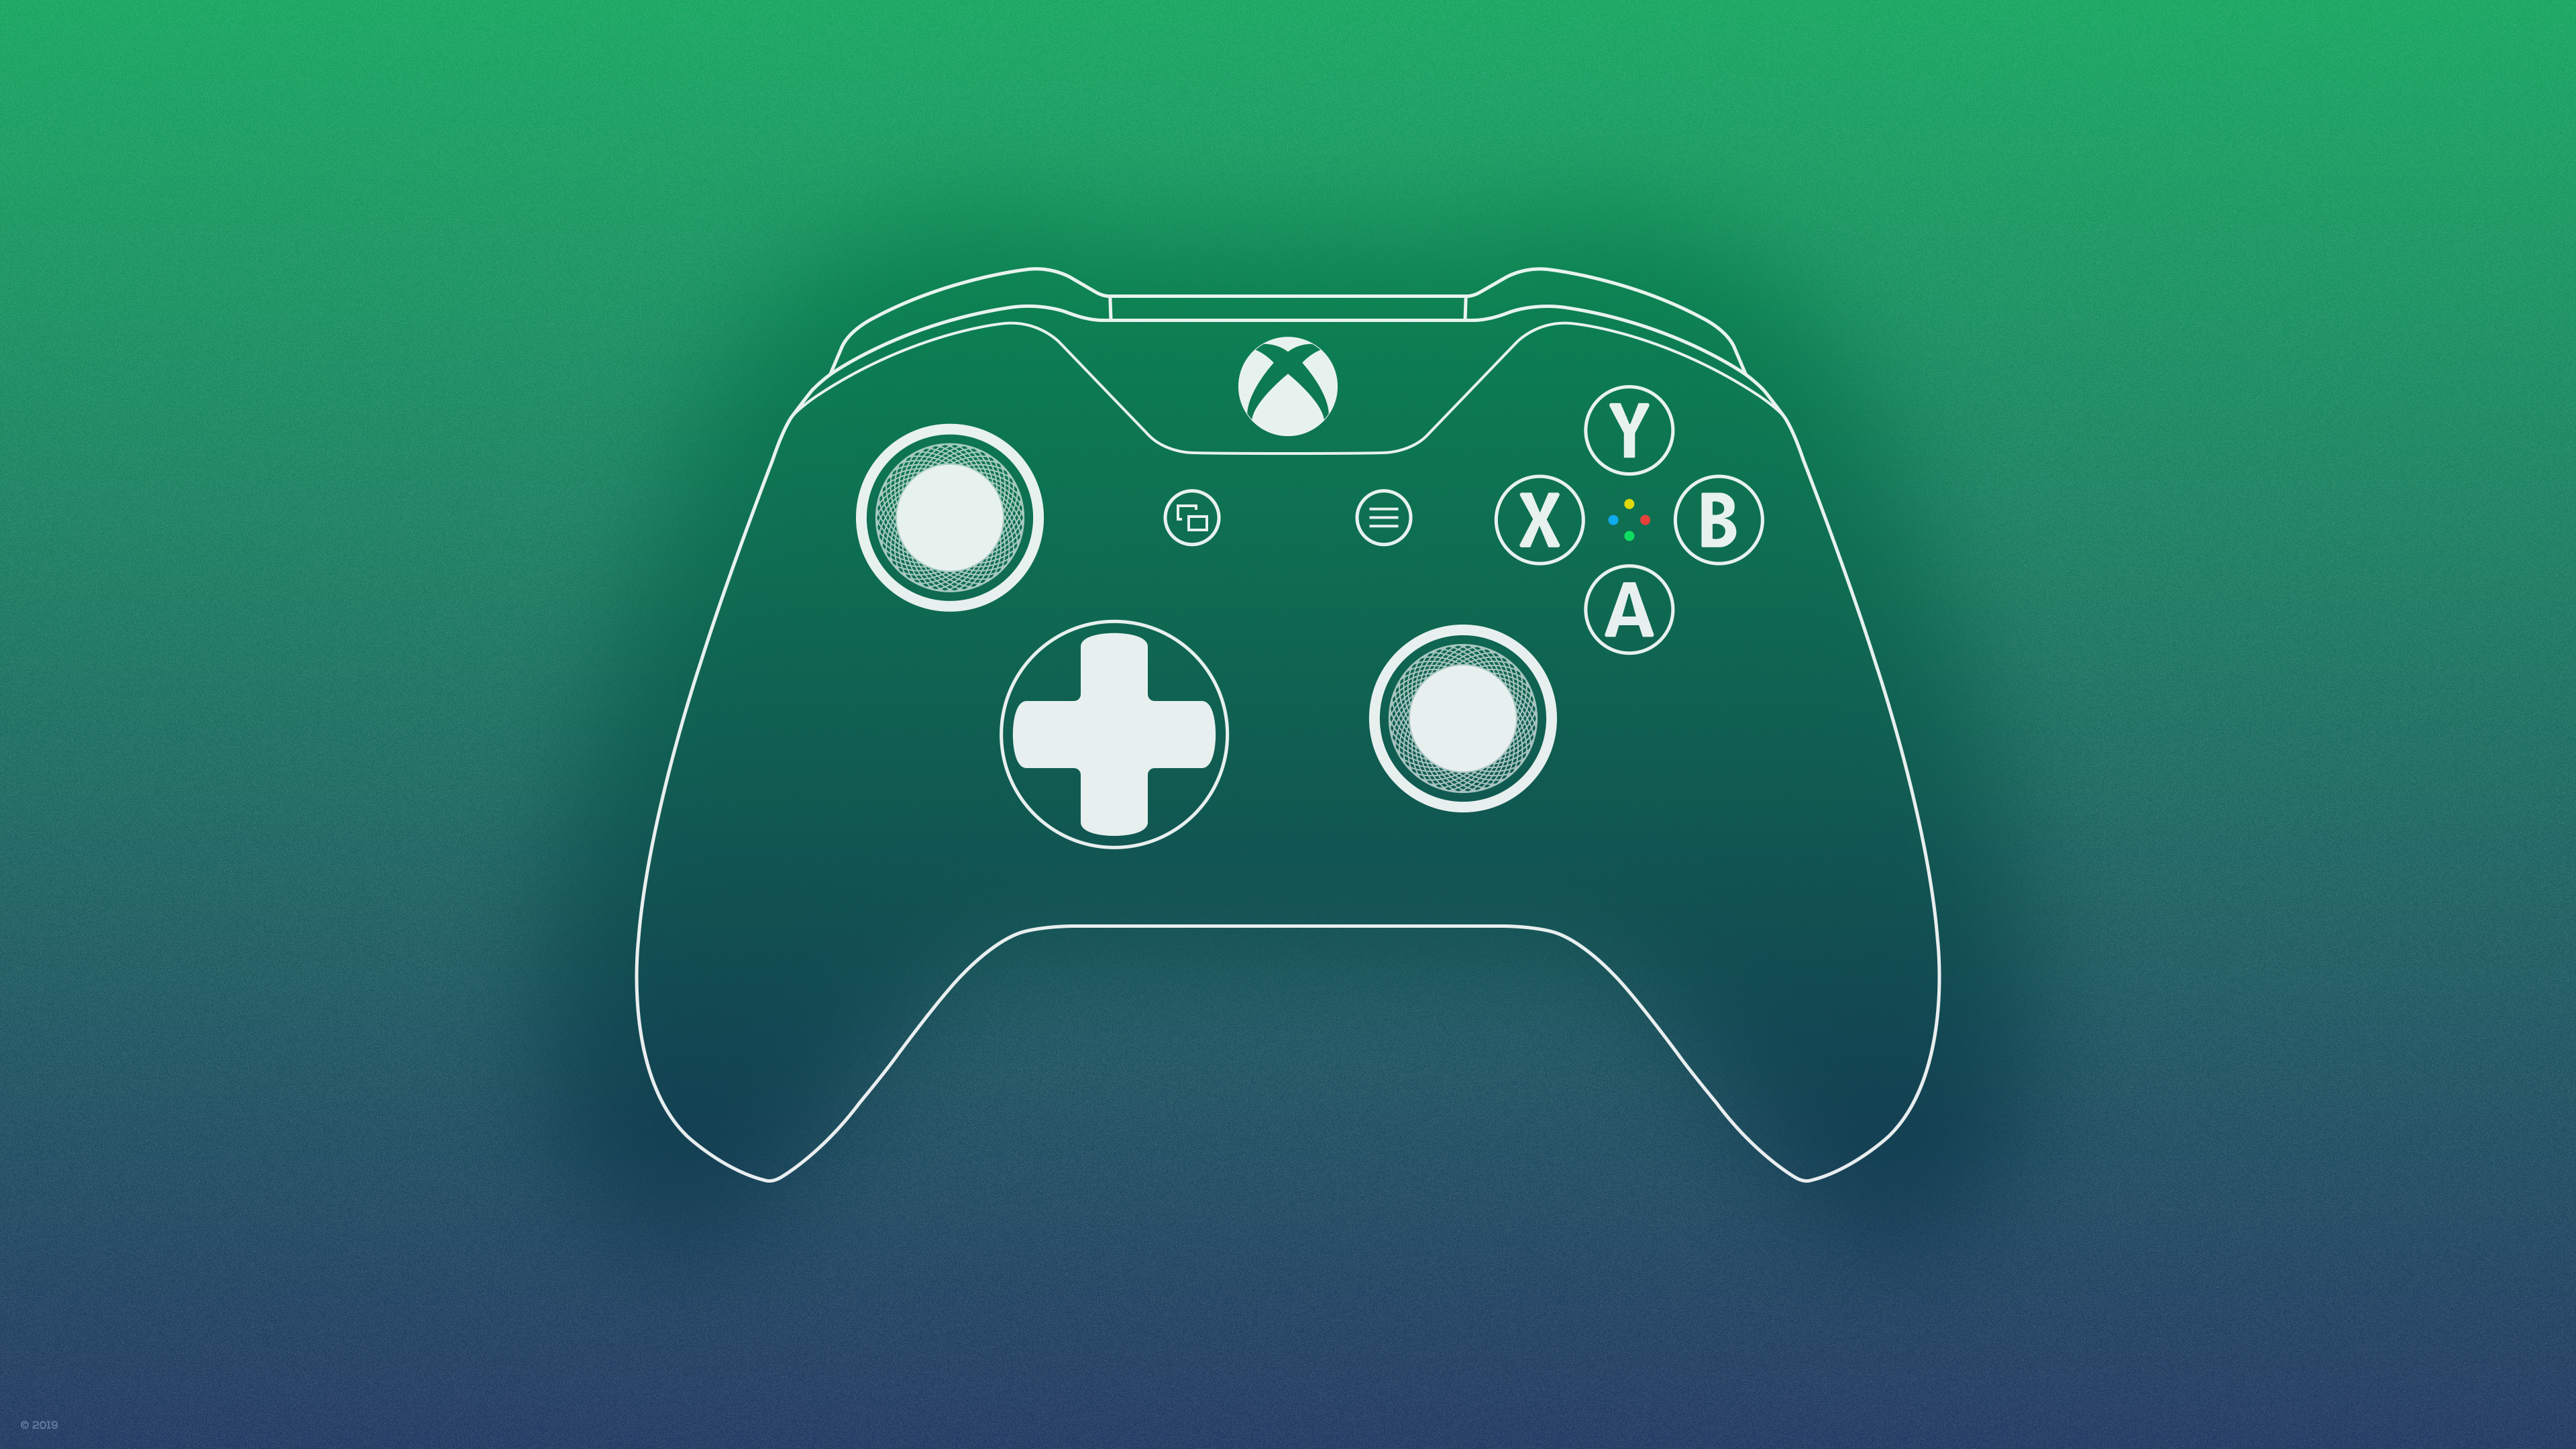 Xbox Controller Wallpaper: Bạn đang tìm kiếm một hình nền độc đáo cho chiếc điện thoại thông minh của mình? Hãy chọn Xbox Controller Wallpaper để thể hiện sự đam mê của bạn về game. Với các hình ảnh đẹp mắt và chất lượng cao, bạn sẽ chắc chắn tìm được hình nền ưng ý cho màn hình của mình.